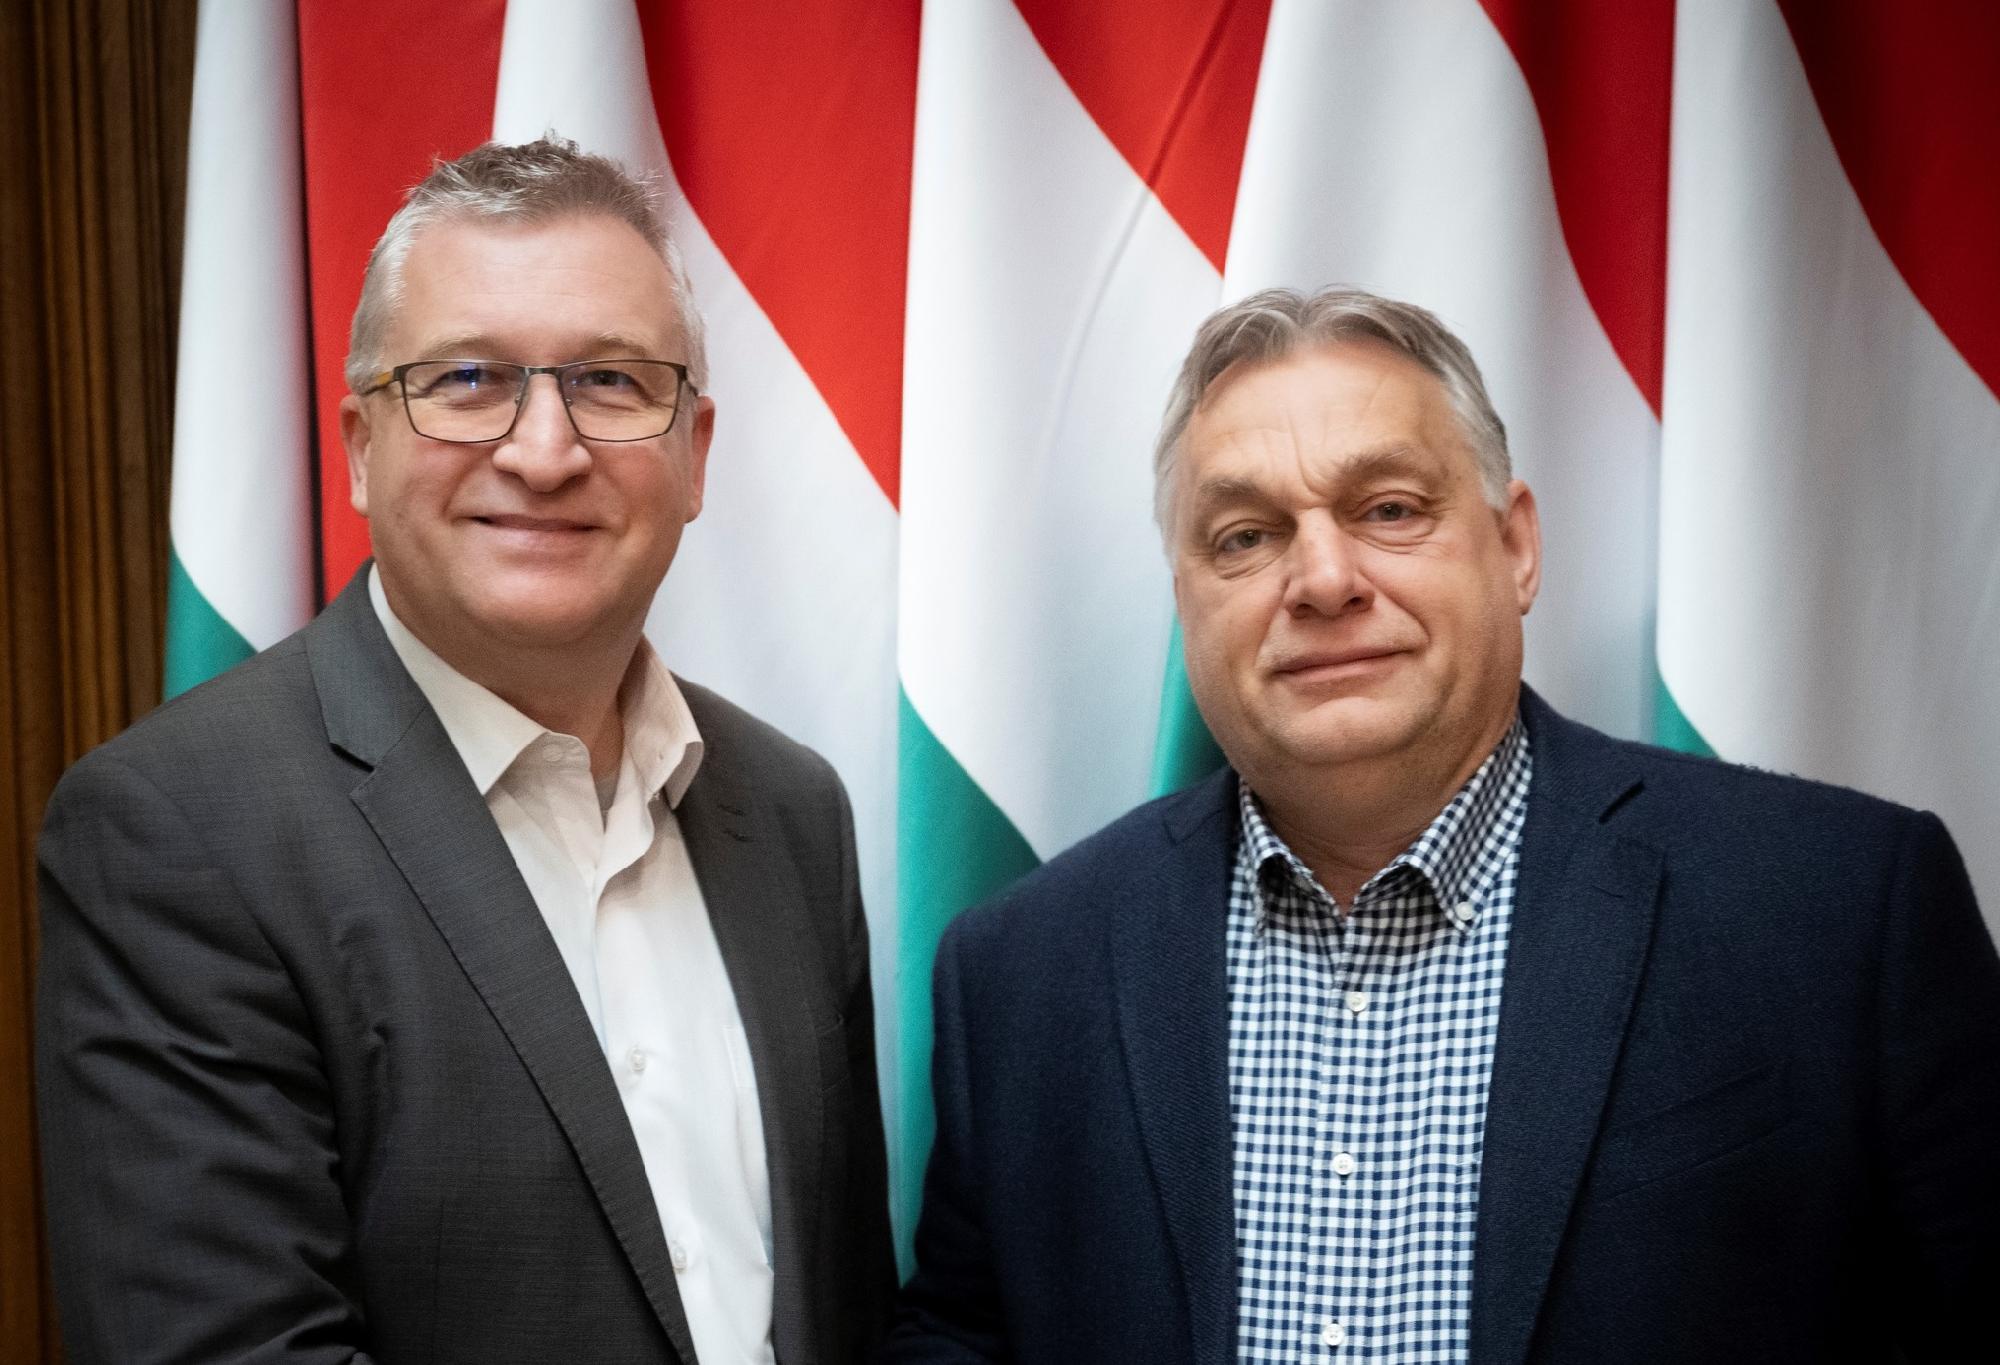 Orbán Viktor támogatja a Fidesz-KDNP csepeli polgármester-jelöltjének programját